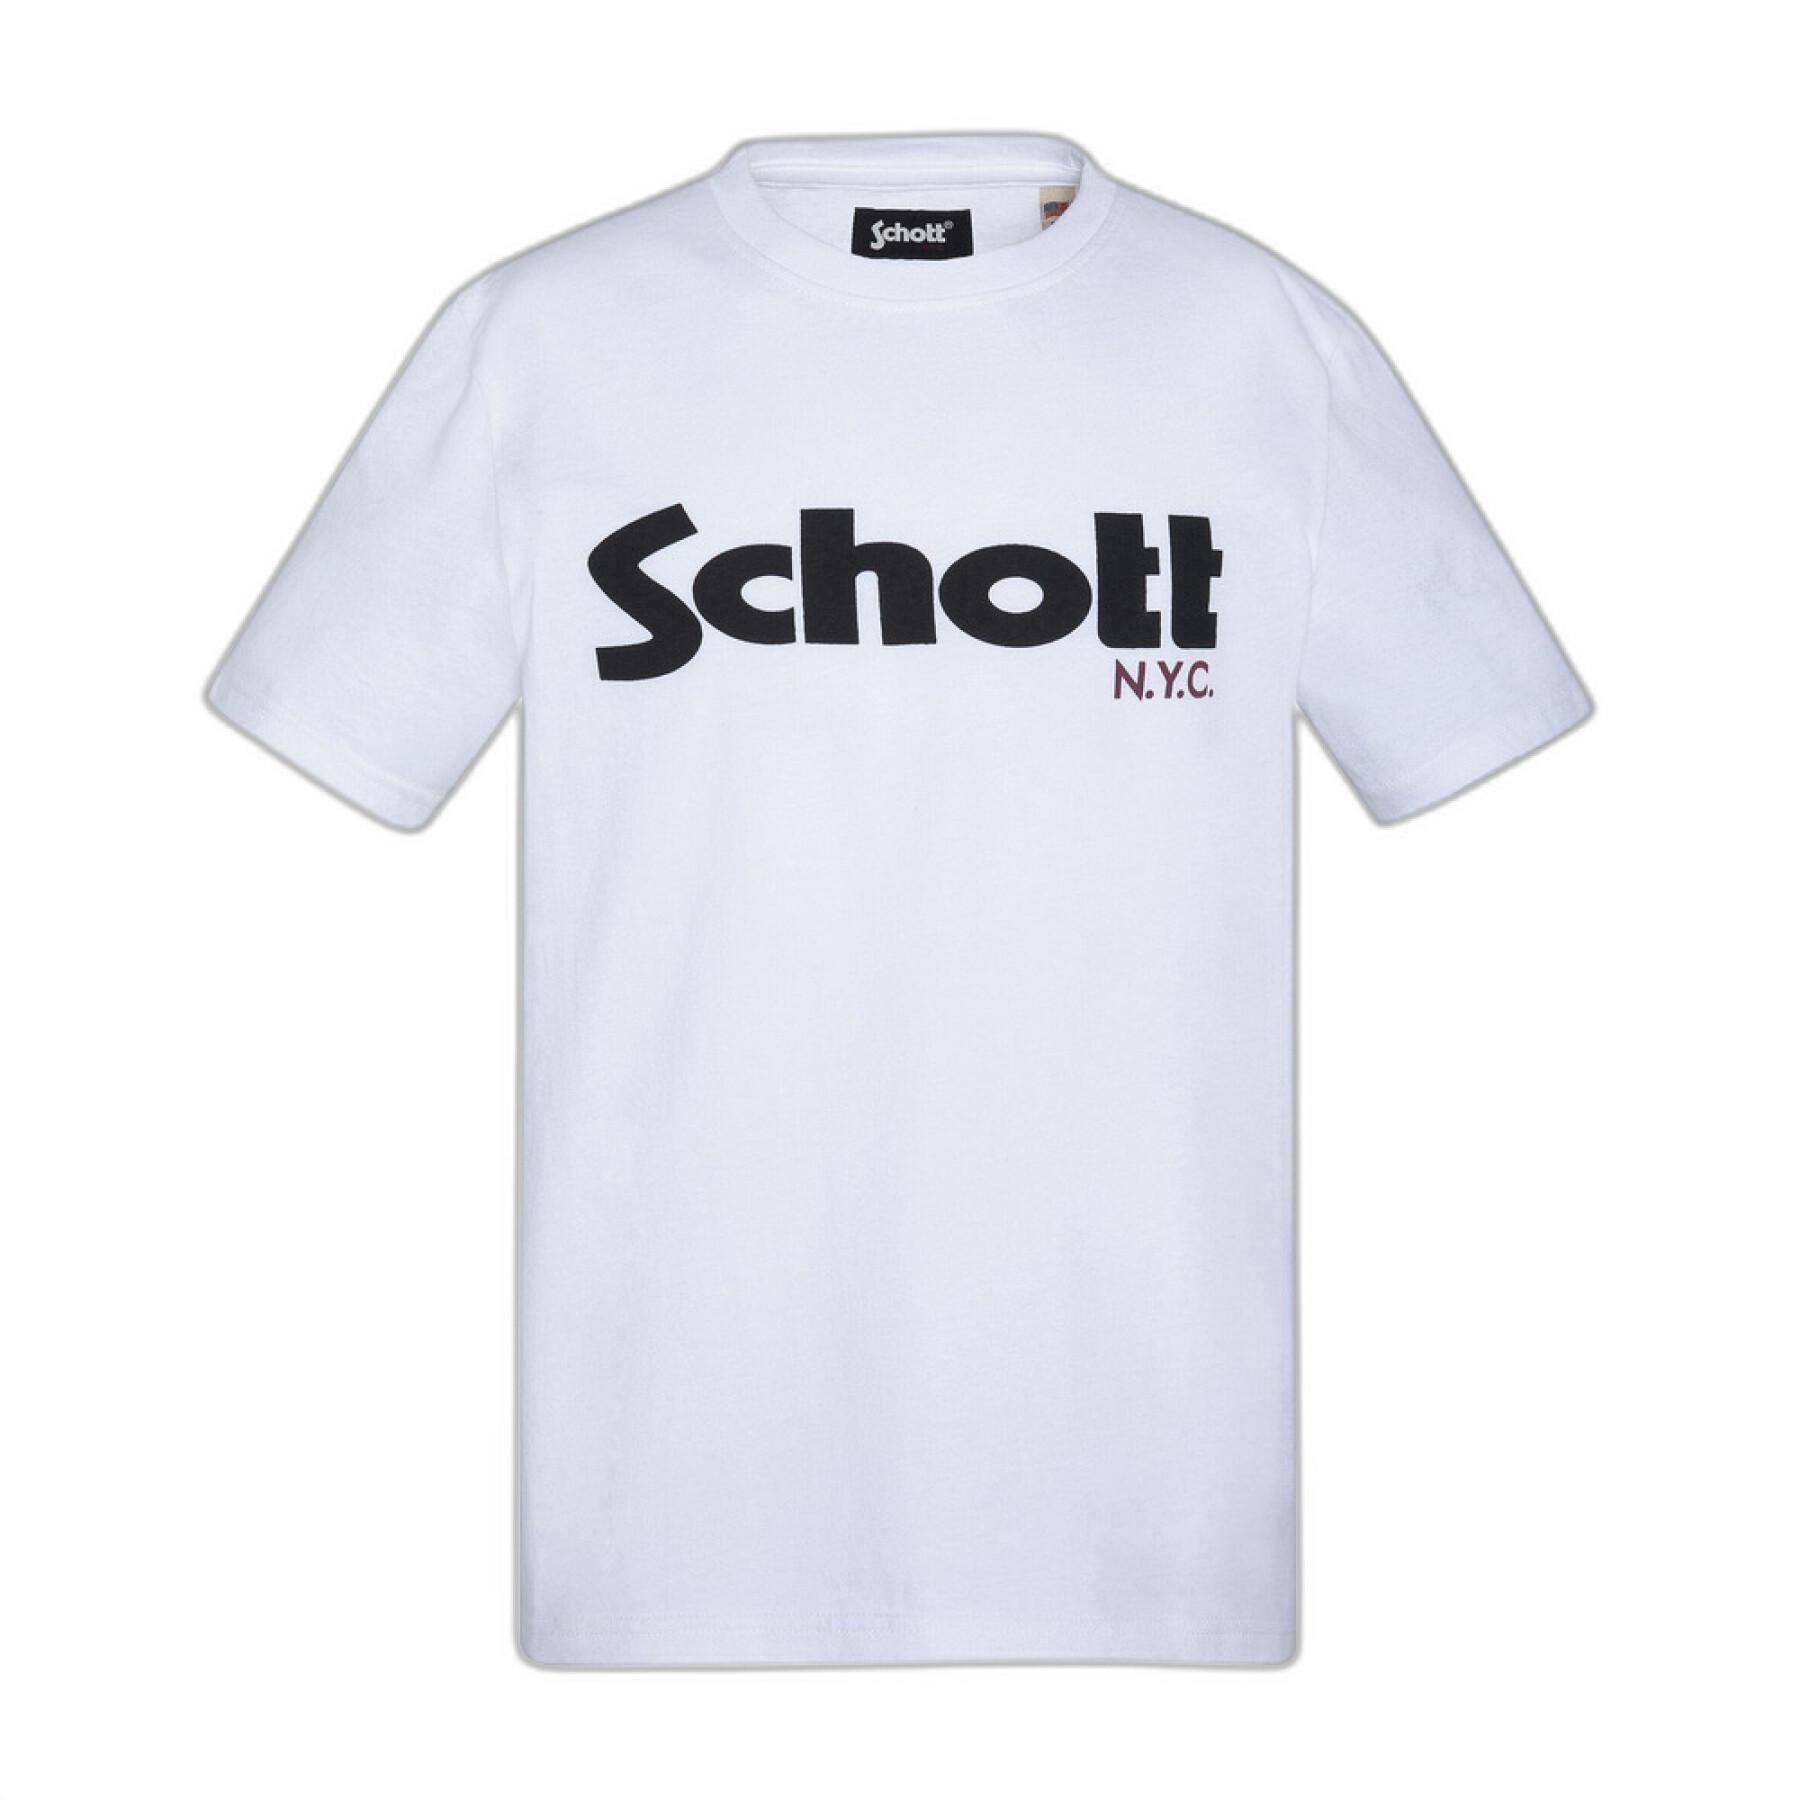 Kinder-T-shirt met logo Schott